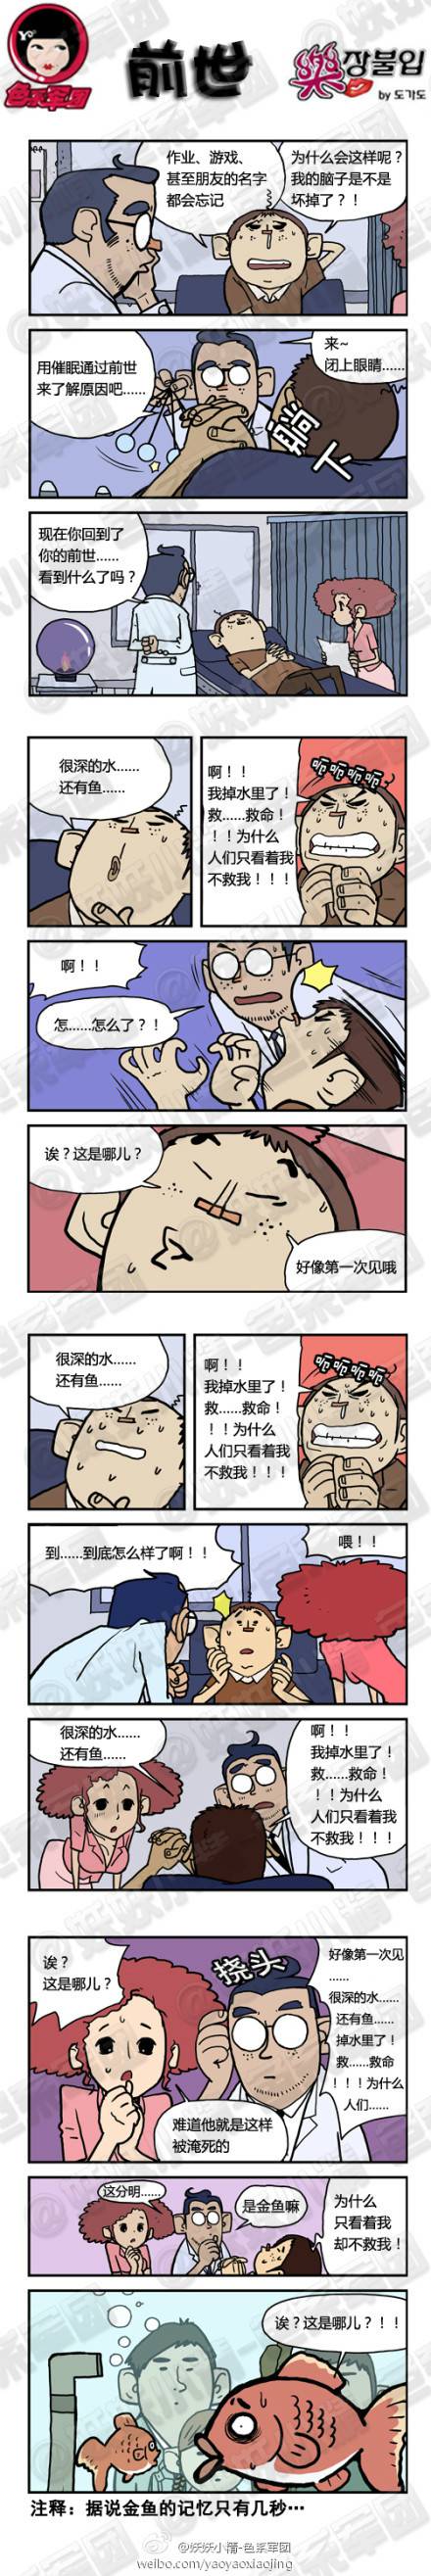 邪恶漫画爆笑囧图第343刊：为什么